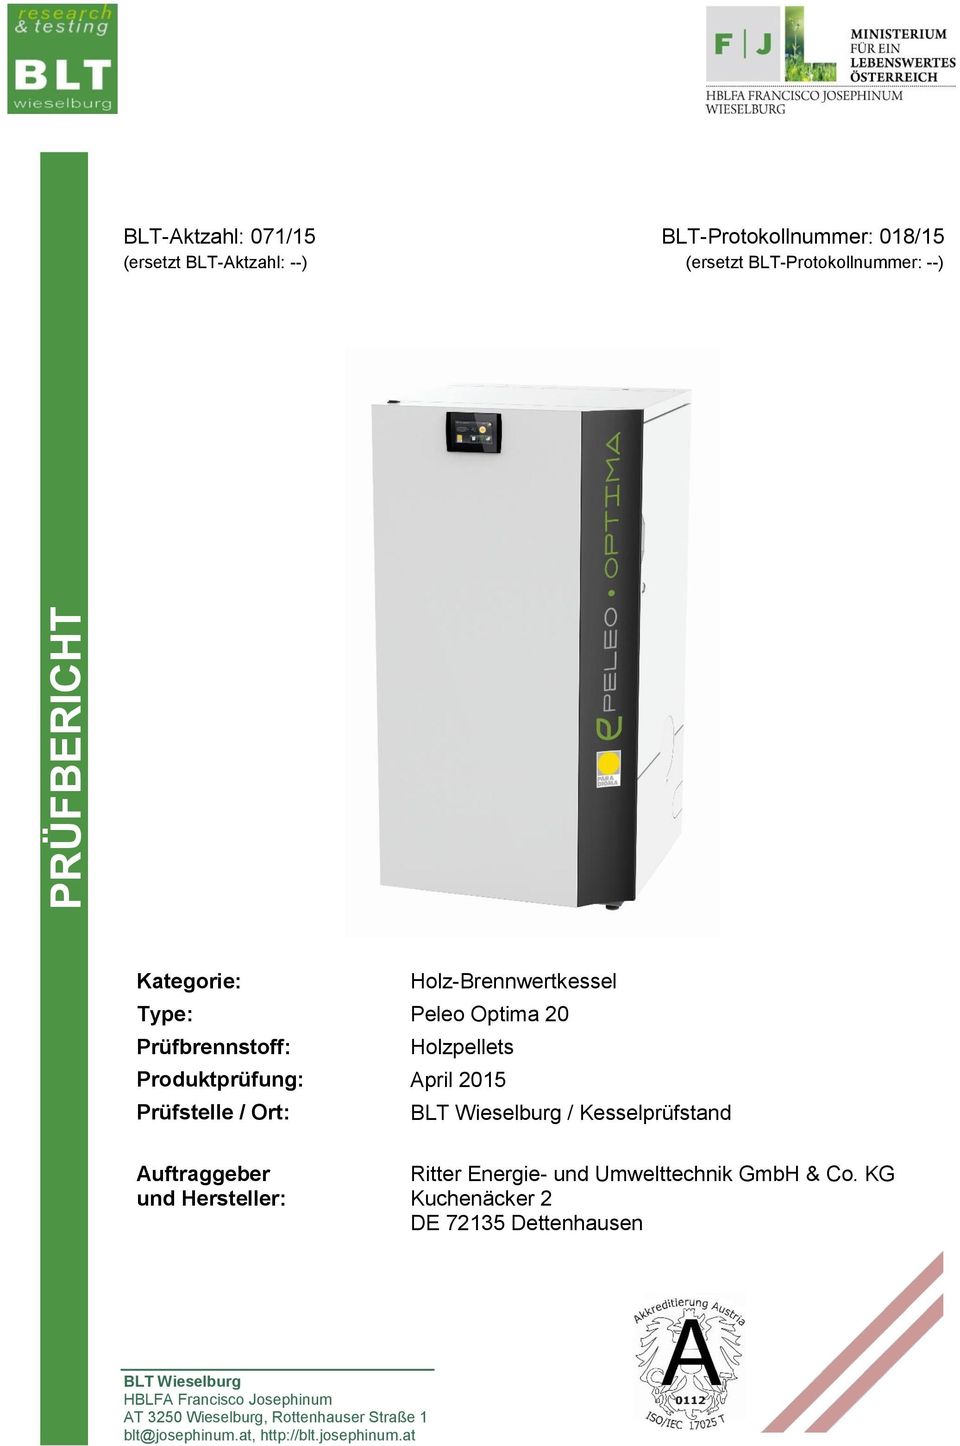 BLT Wieselburg / Kesselprüfstand Auftraggeber und Hersteller: Ritter Energie- und Umwelttechnik GmbH & Co.